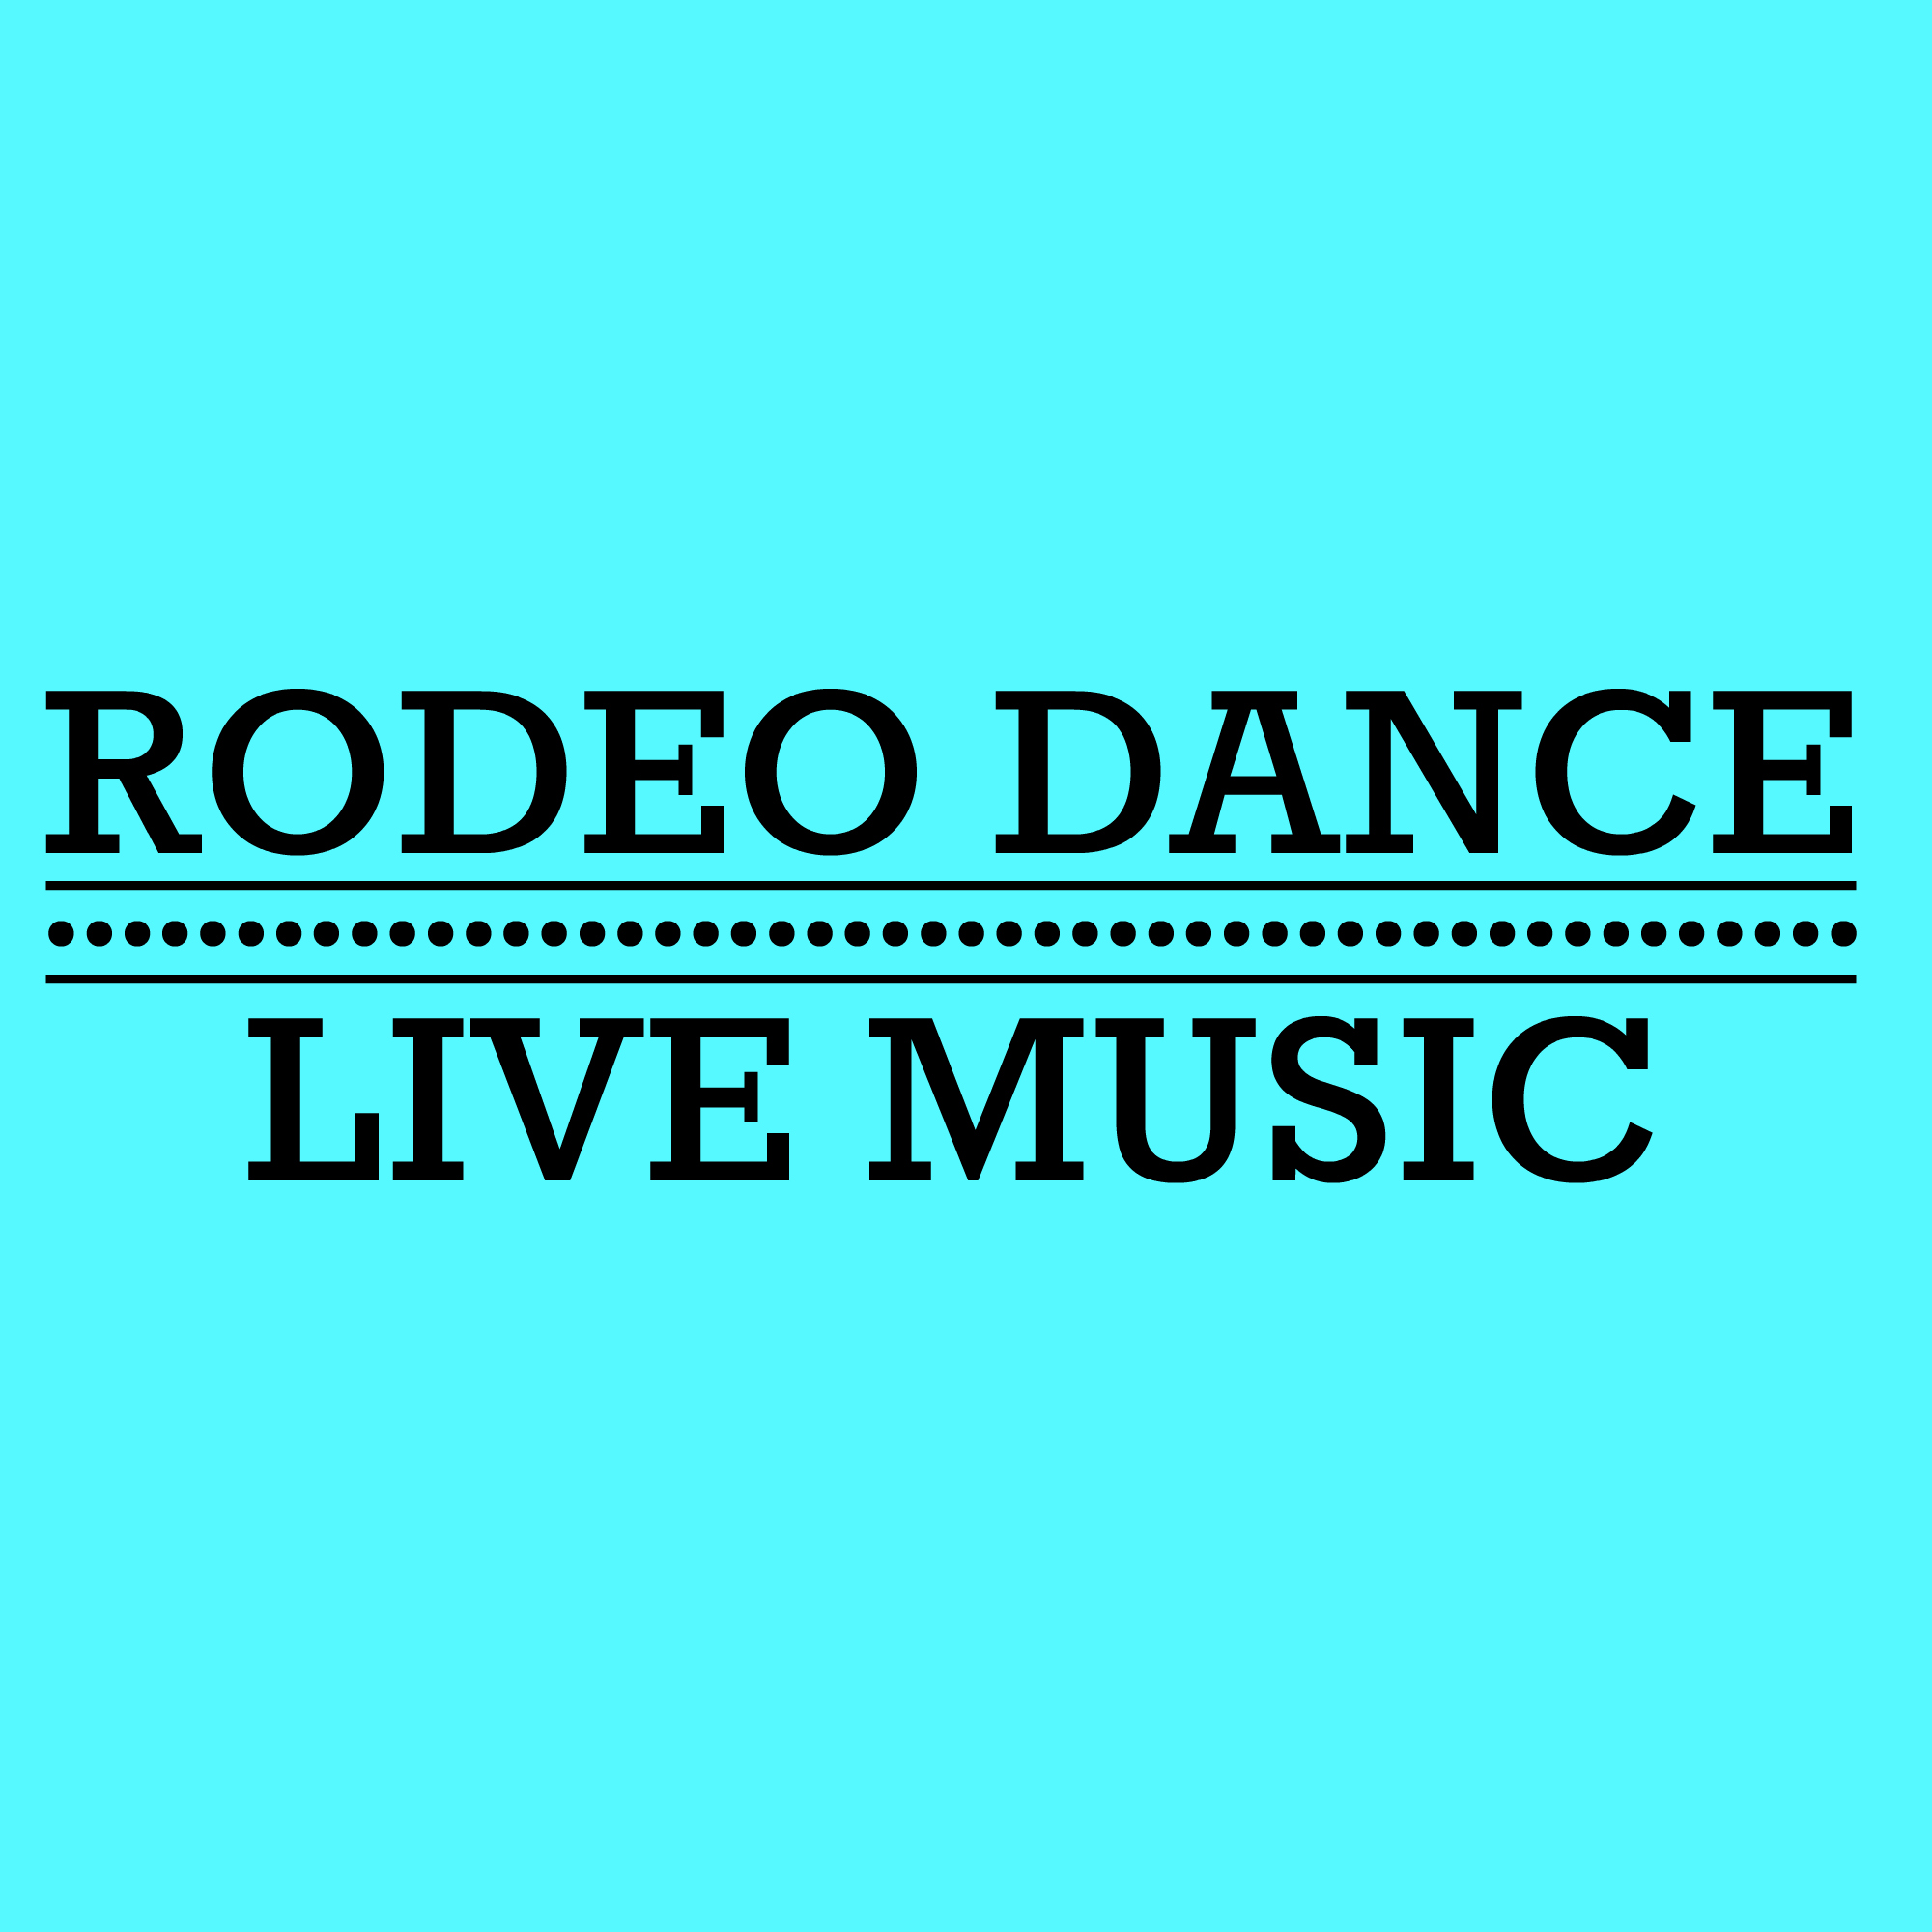 Rodeo dance.jpg